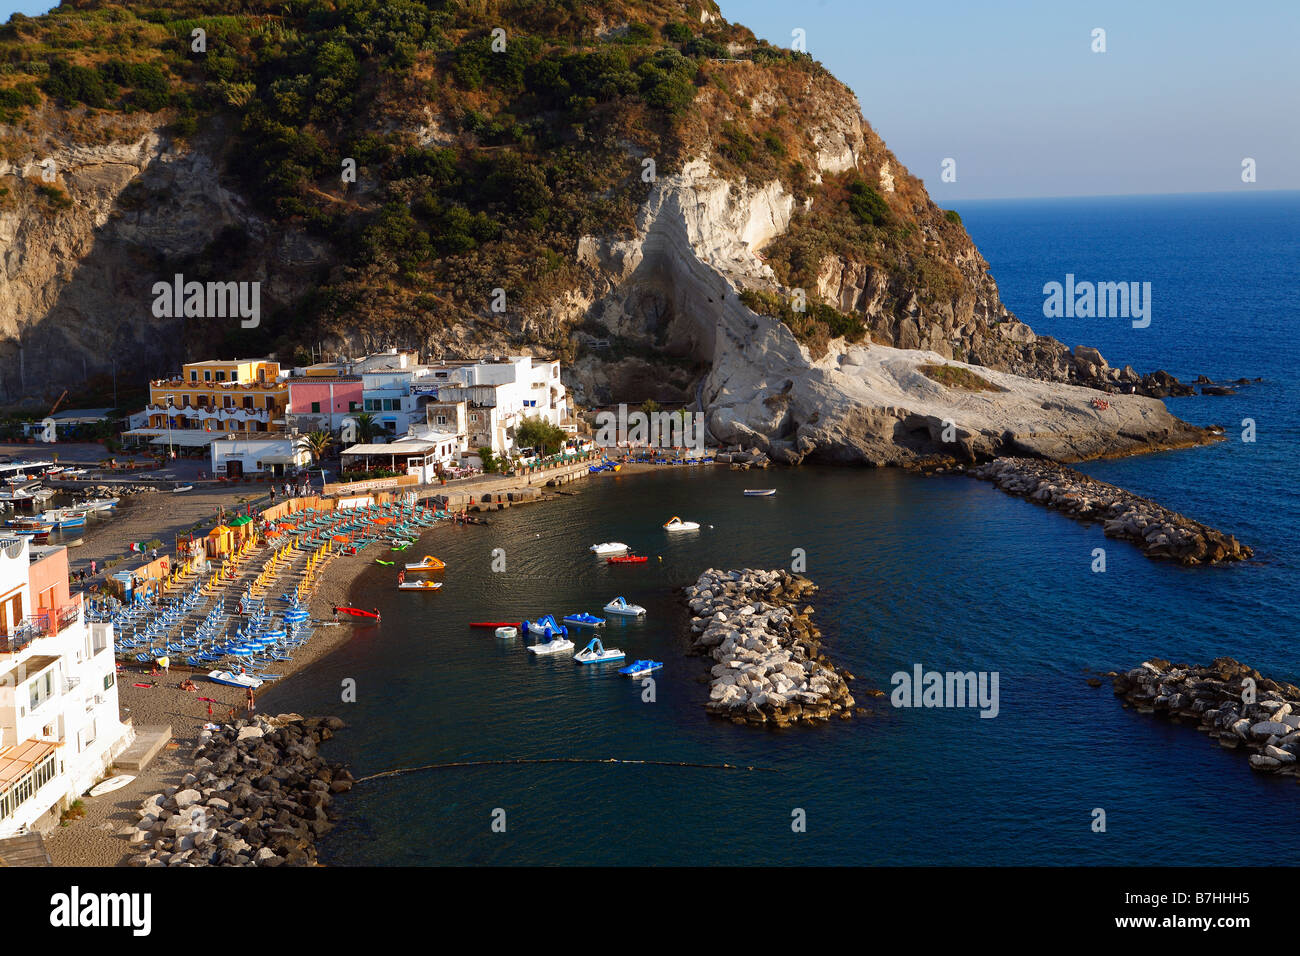 St. Angelo Ischia island Italy Stock Photo